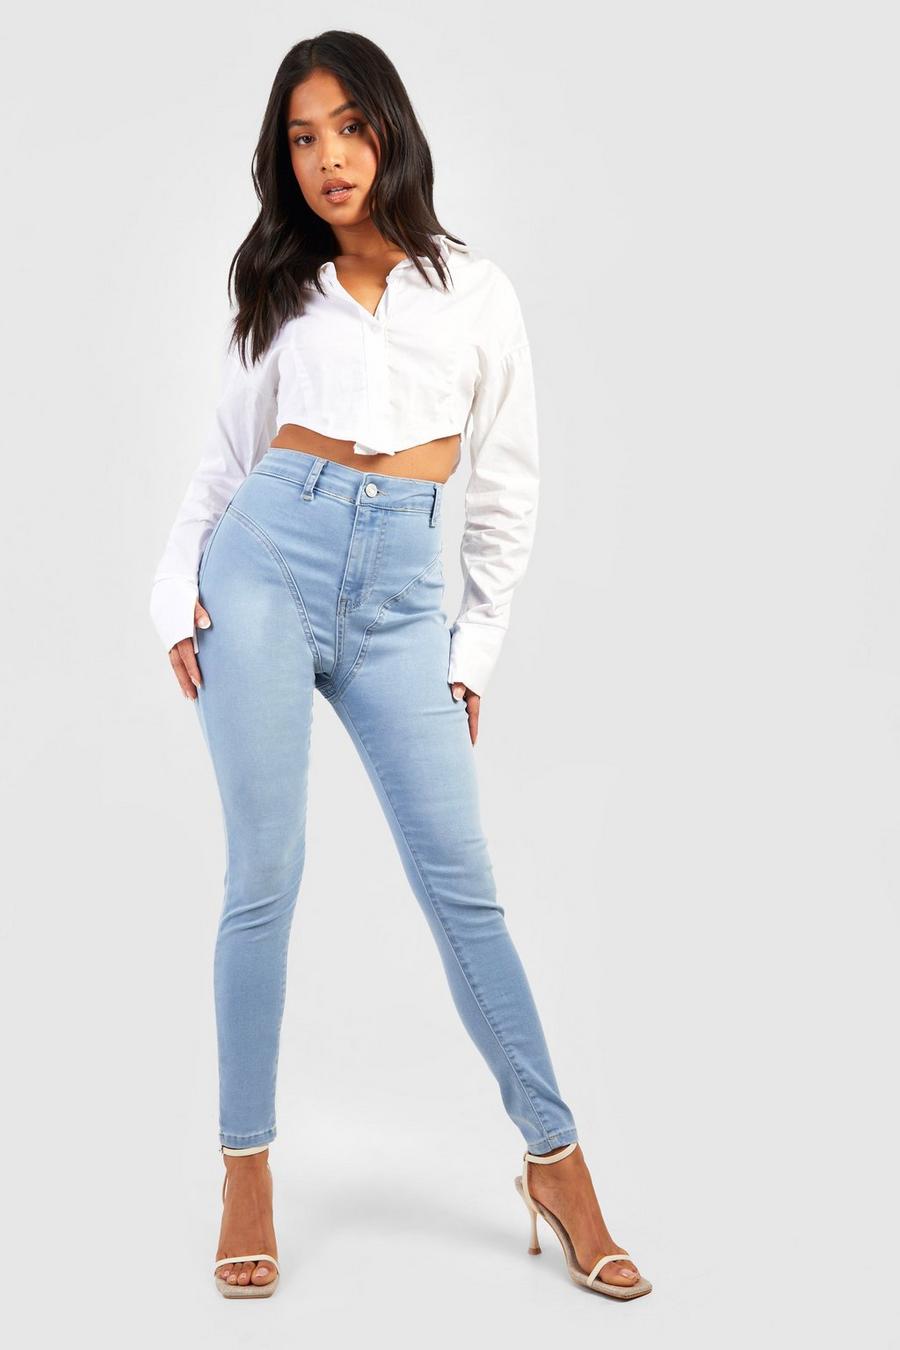 Jeans Skinny Fit Petite a vita alta modellanti con cuciture, Light wash azzurro